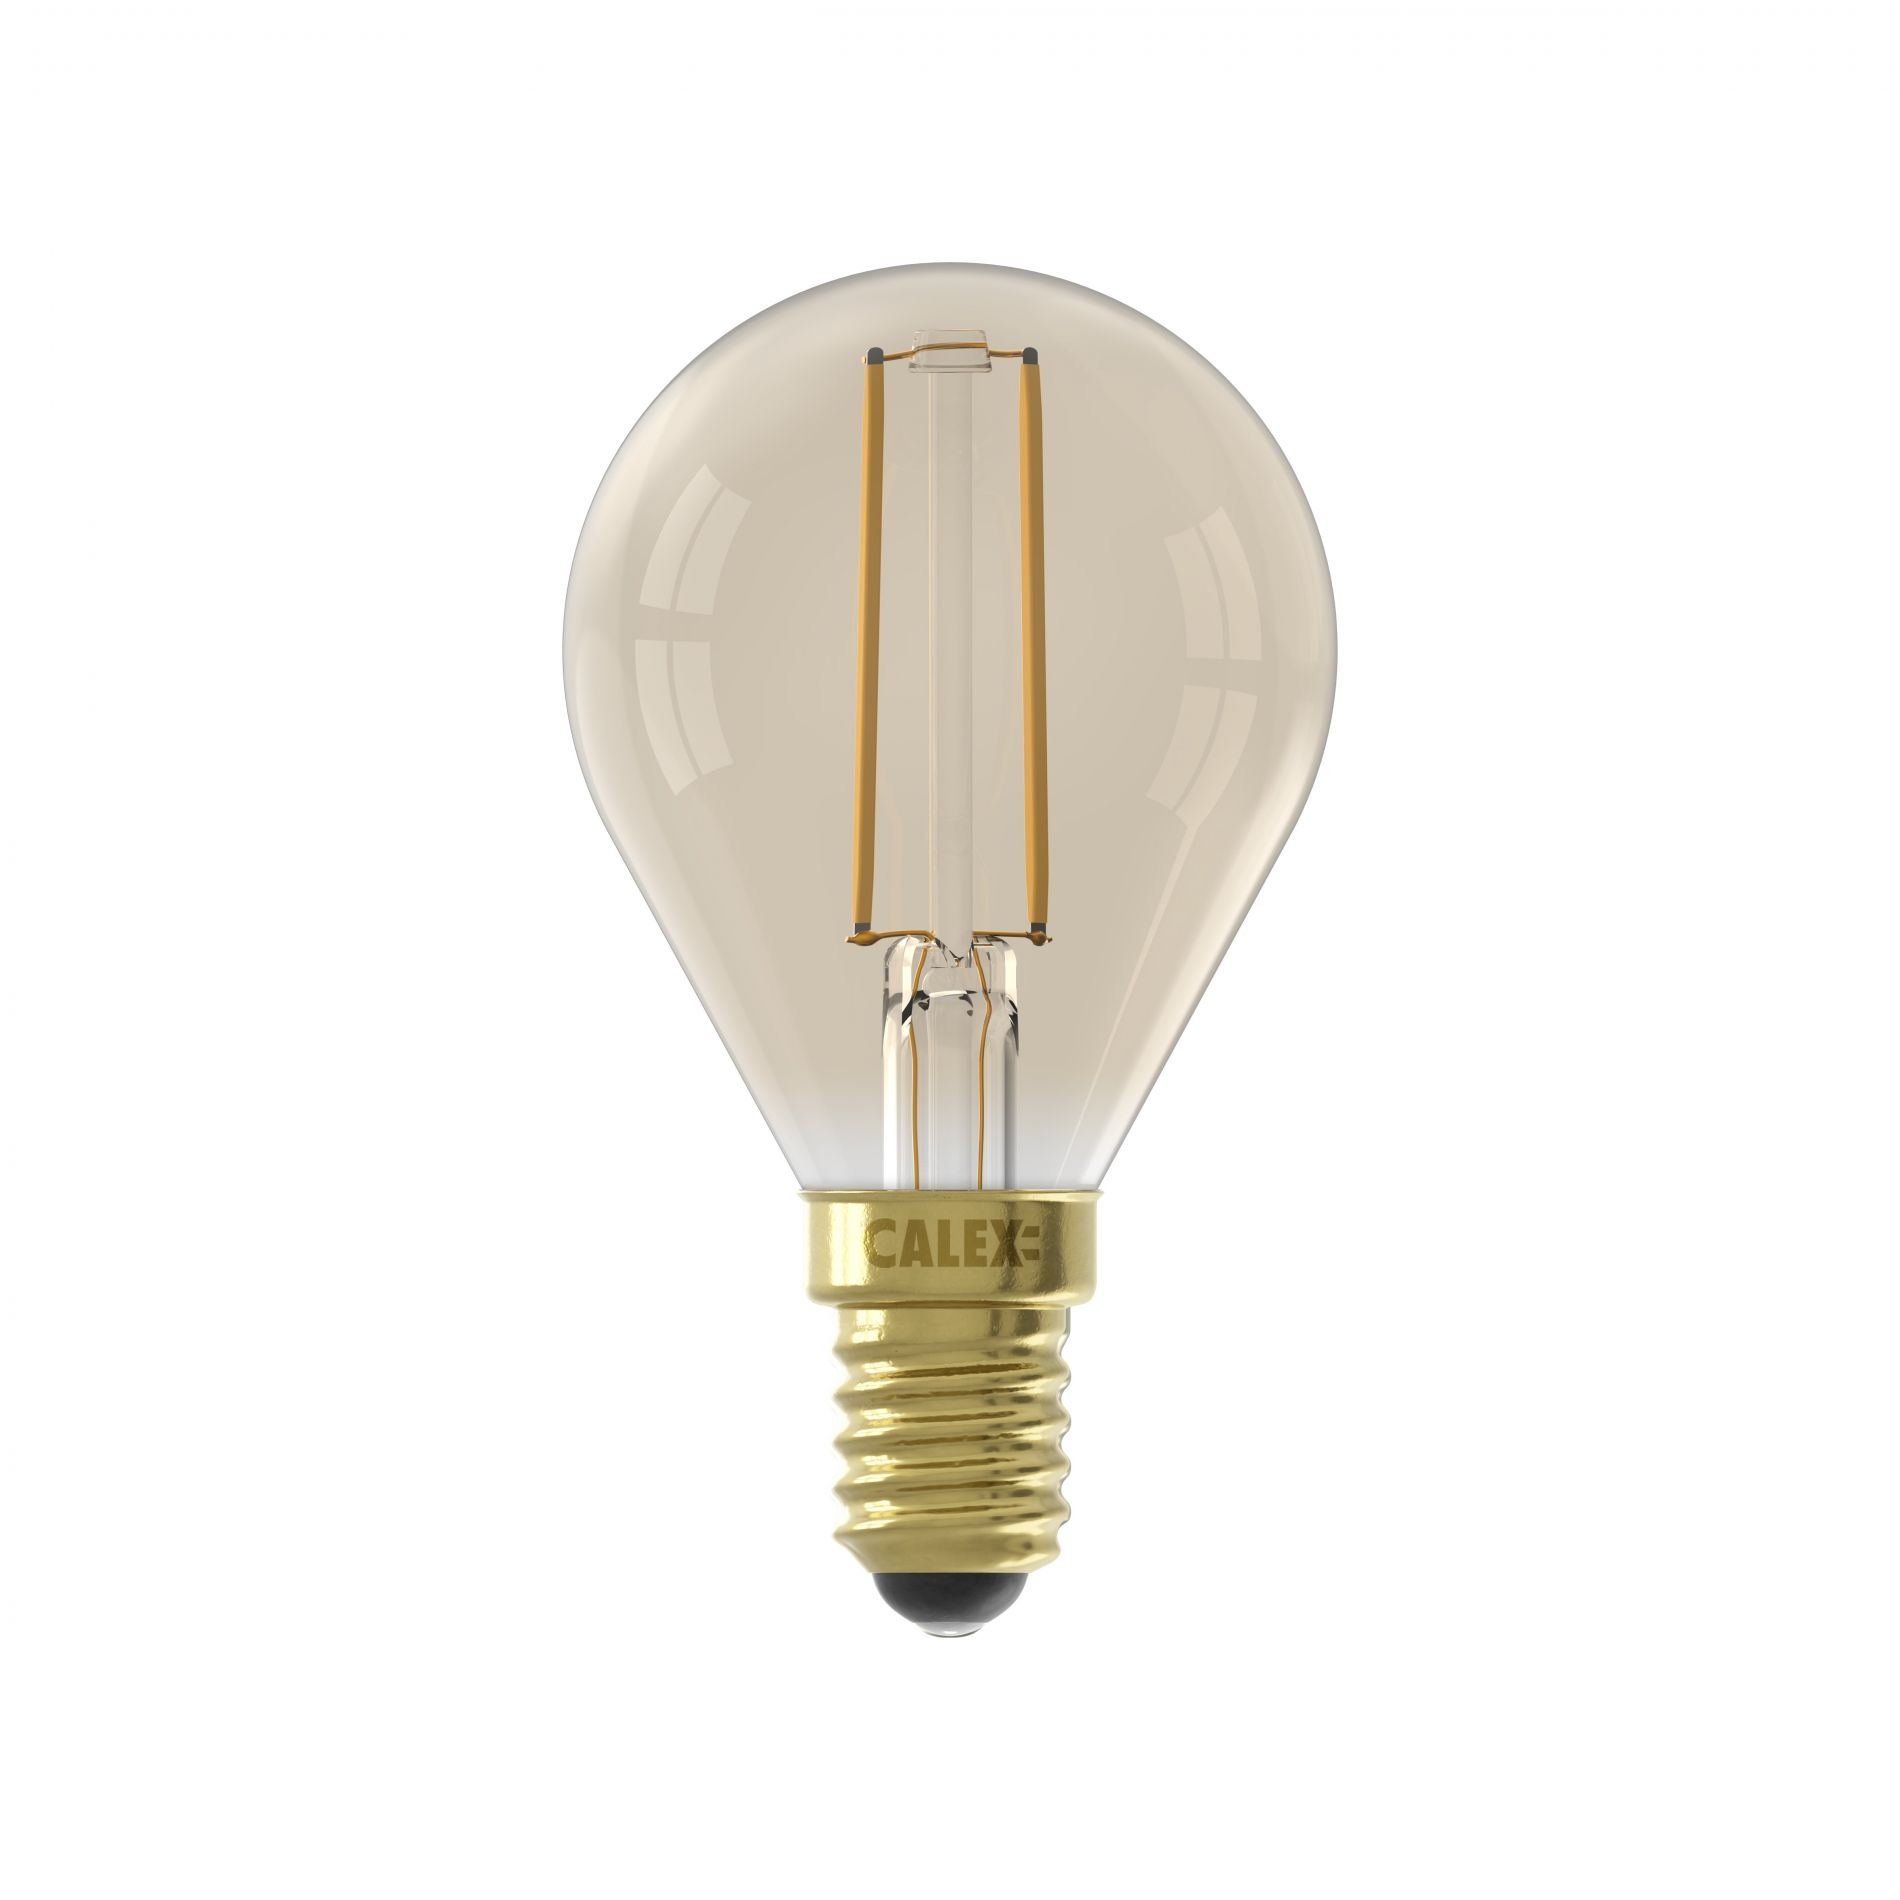 Ampoule LED E14 6W à filament pour un design moderne